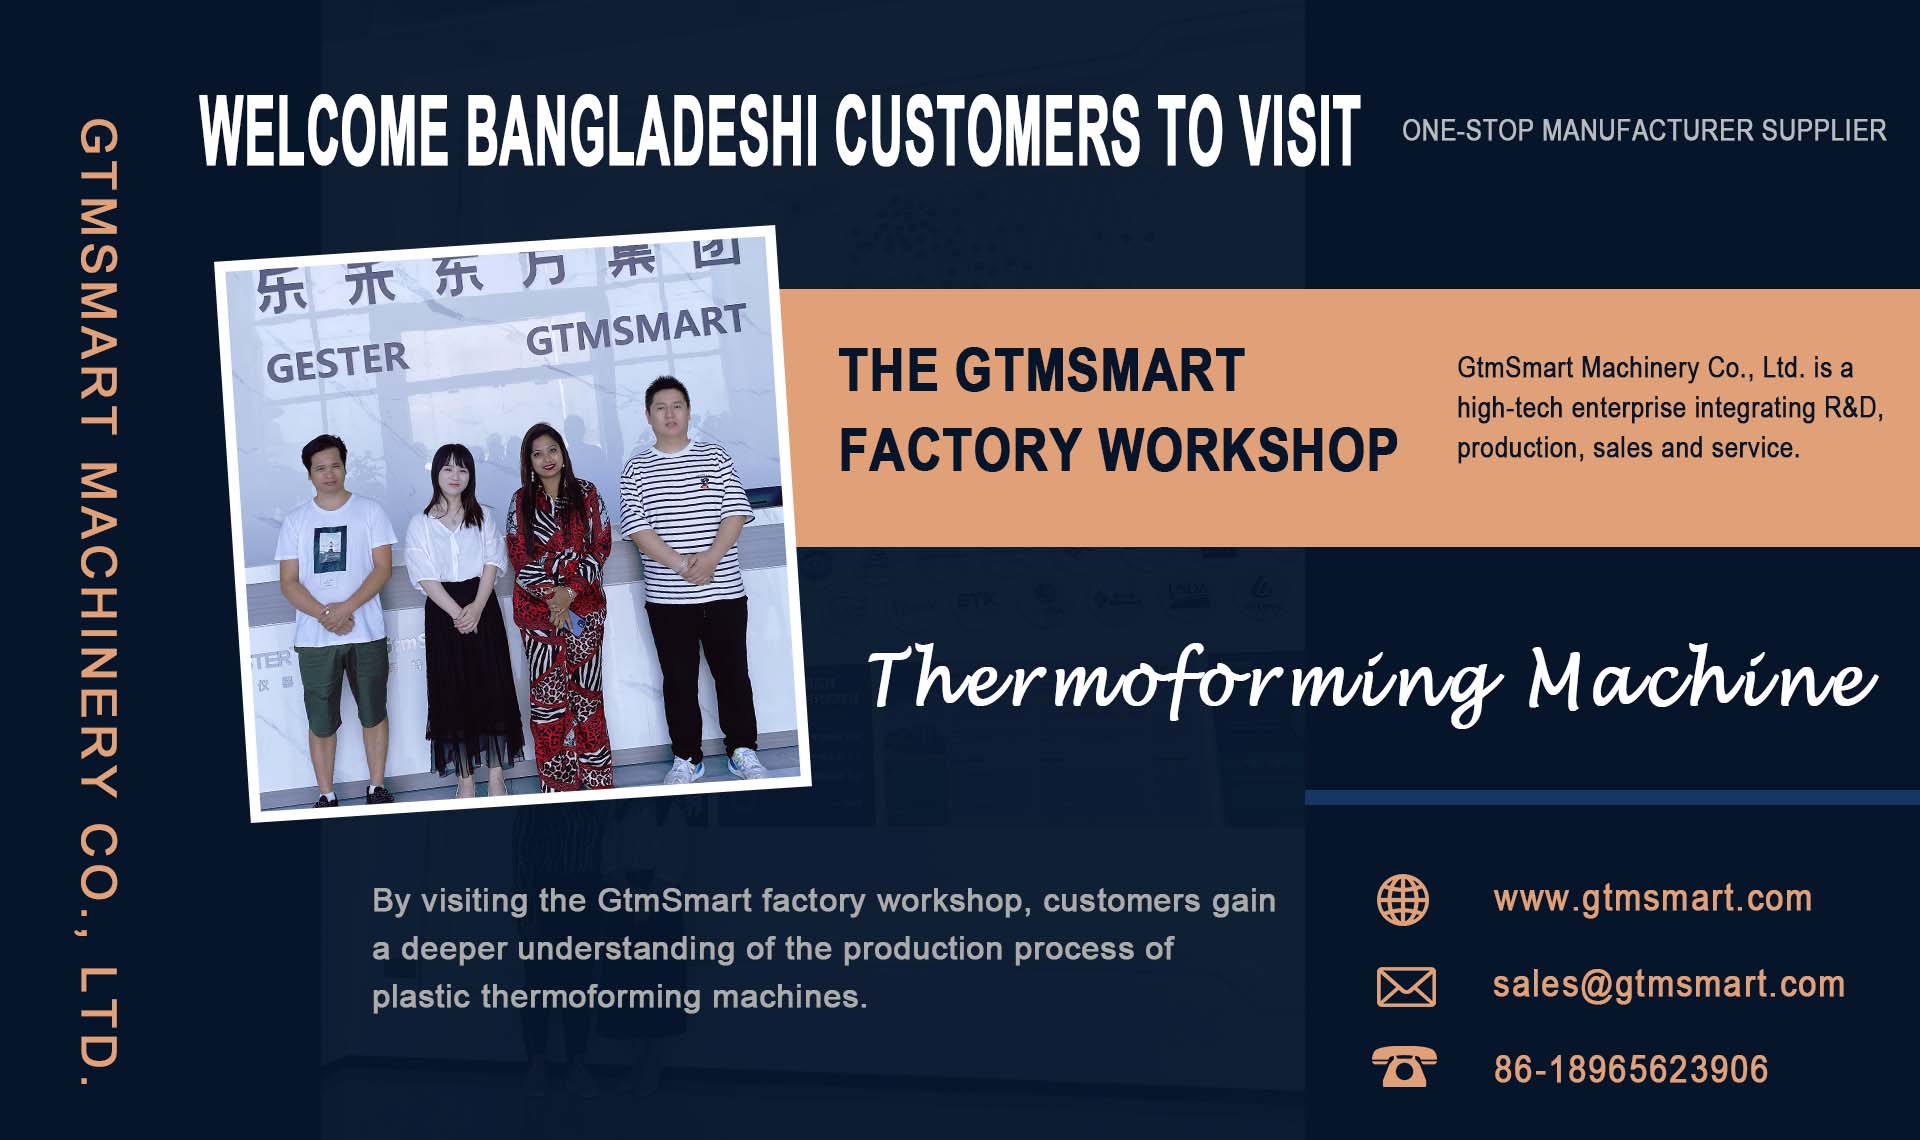 Wilujeng sumping Palanggan Bangladeshi Nganjang ka Bengkel Pabrik GtmSmart